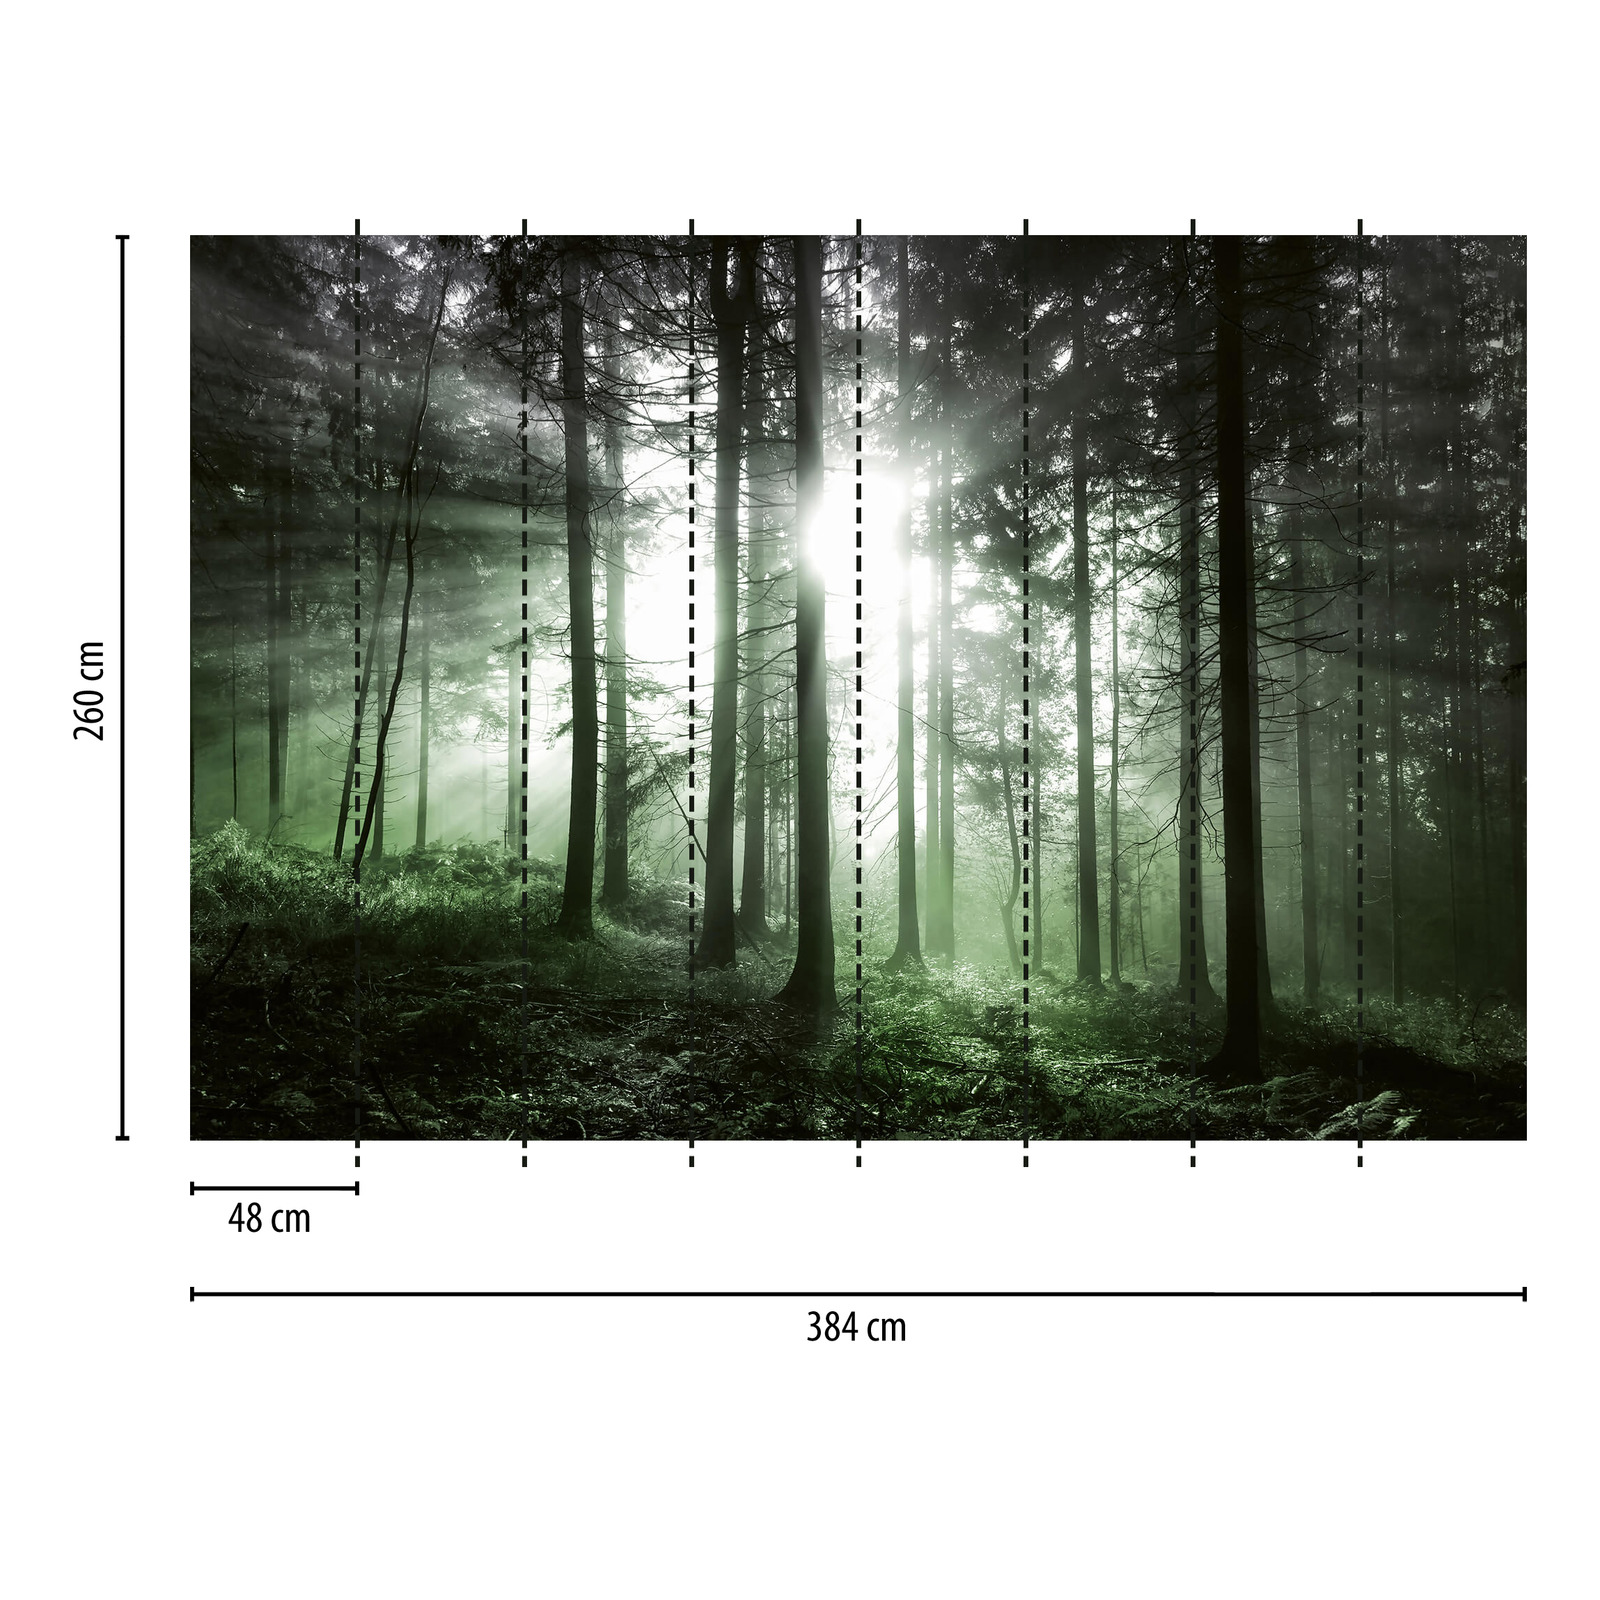             Fototapete Wald mit Lichteinfall – Grün, Schwarz, Weiß
        